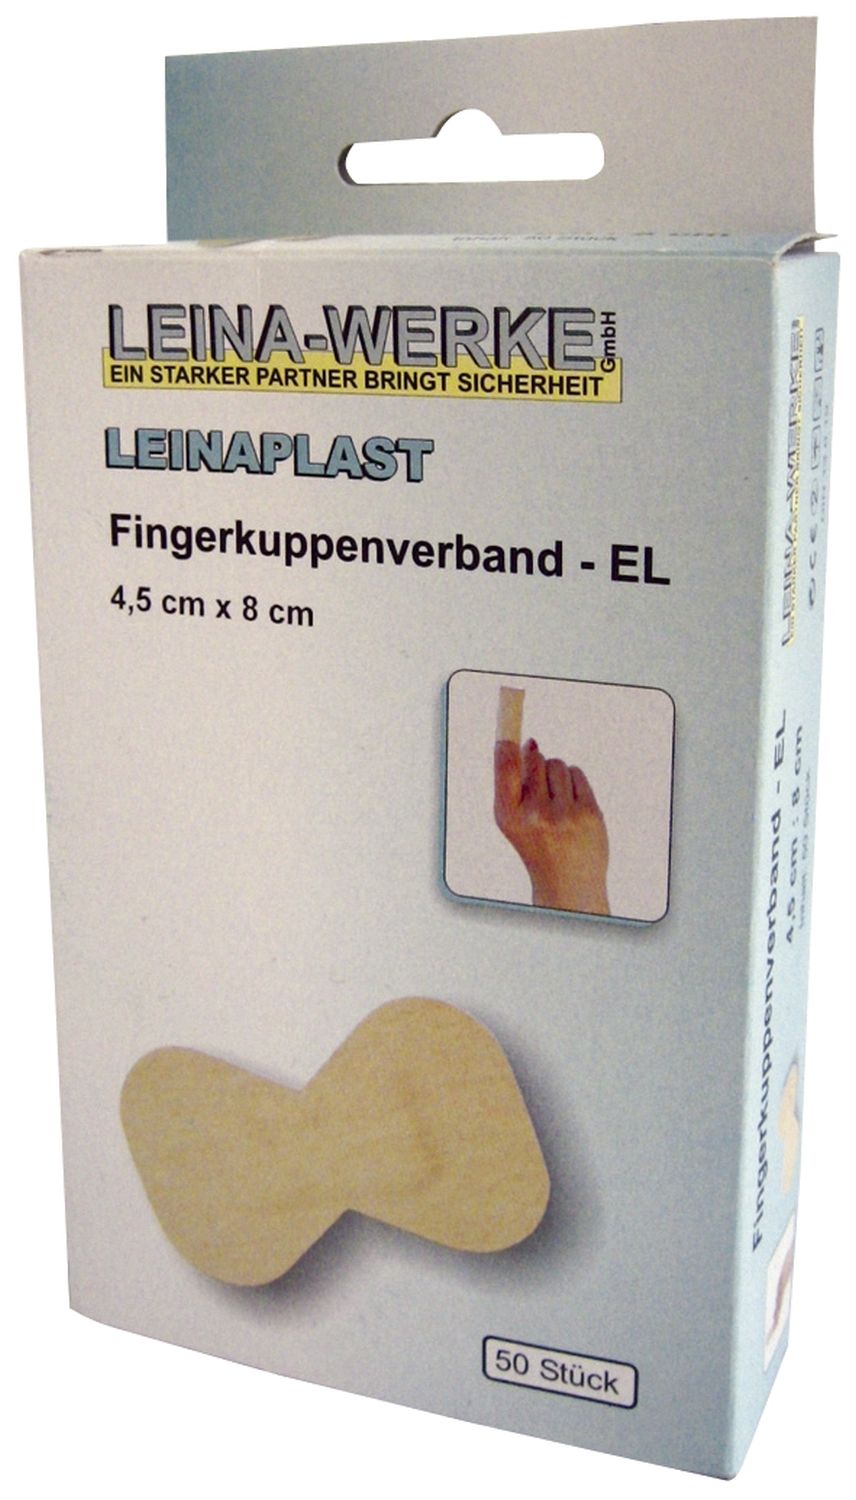 Fingerkuppenverband Leina-Werke 72202, 50 Stück, lose, 4,5 cm x 8 cm, elastisch